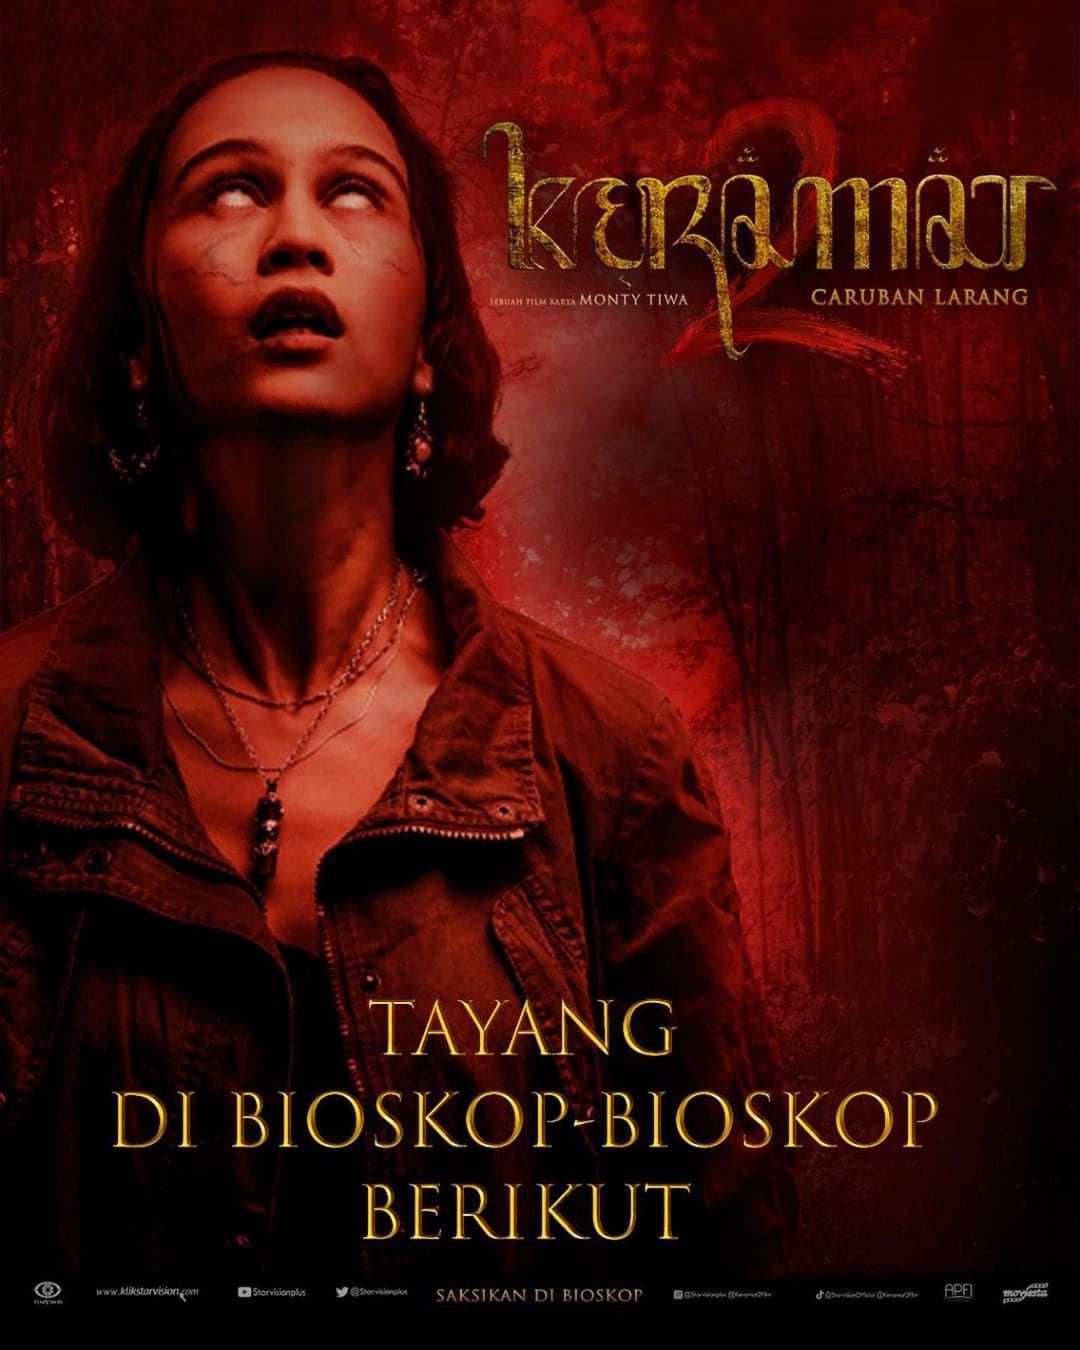 Rekomendasi film horor di Indonesia.